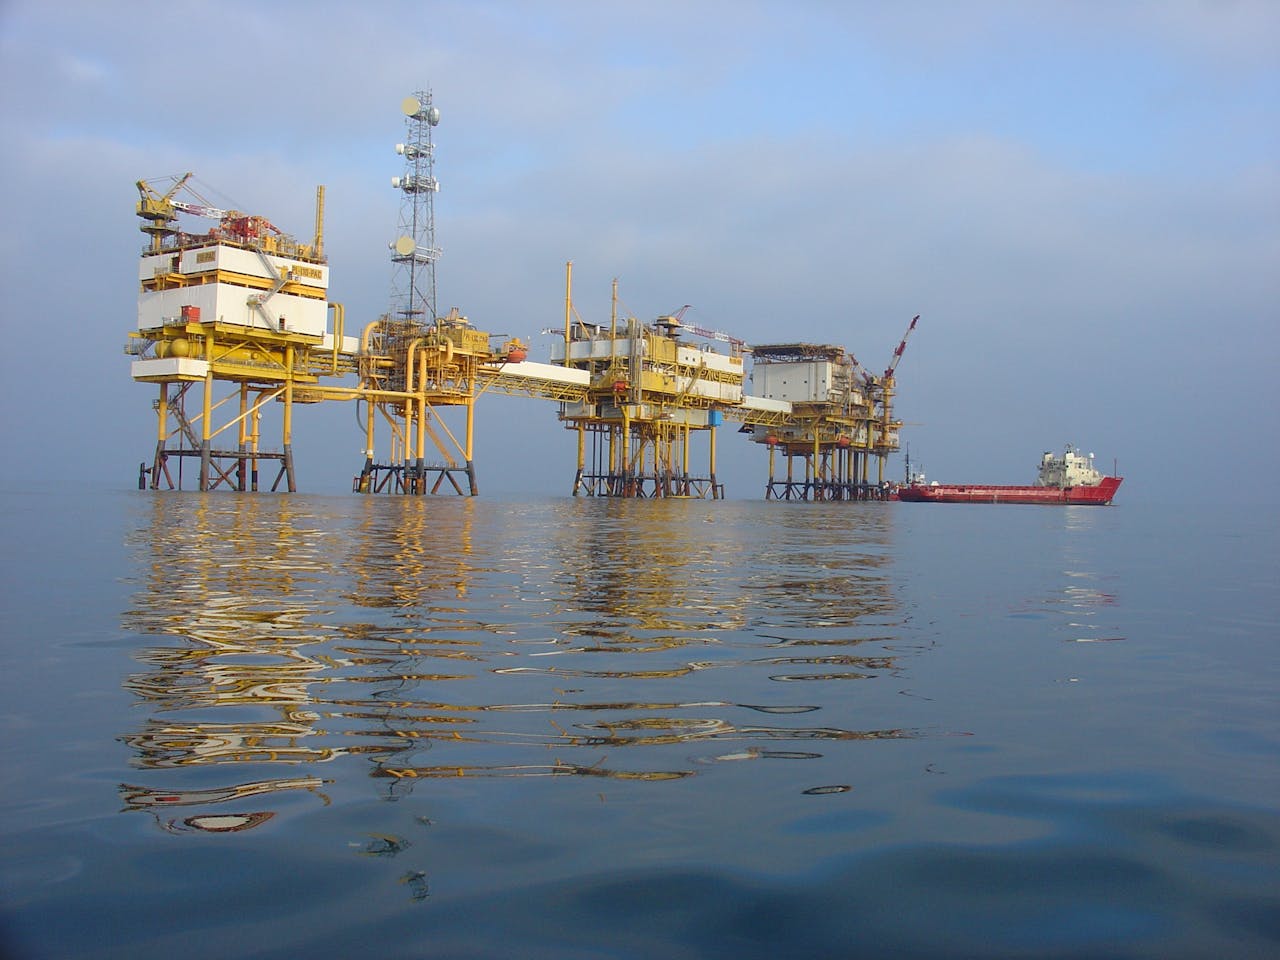 Er is steeds meer activiteit op de gasvelden van de Noordzee nu de gasprijzen hoog staan en Rusland langzaam zijn gaskraan dichtdraait.